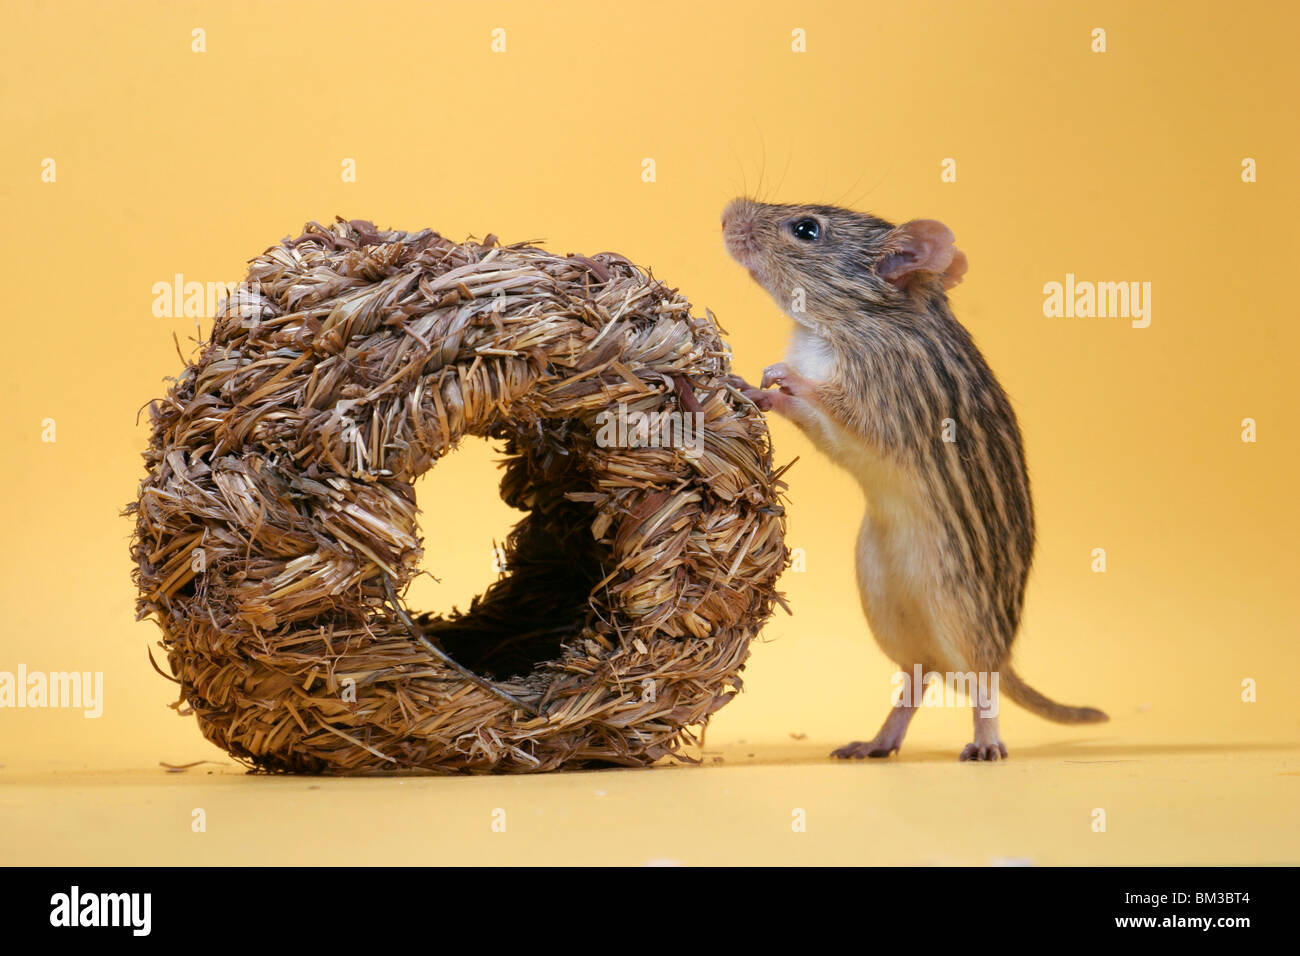 Afrikanische Streifengrasmaus / mouse Stock Photo